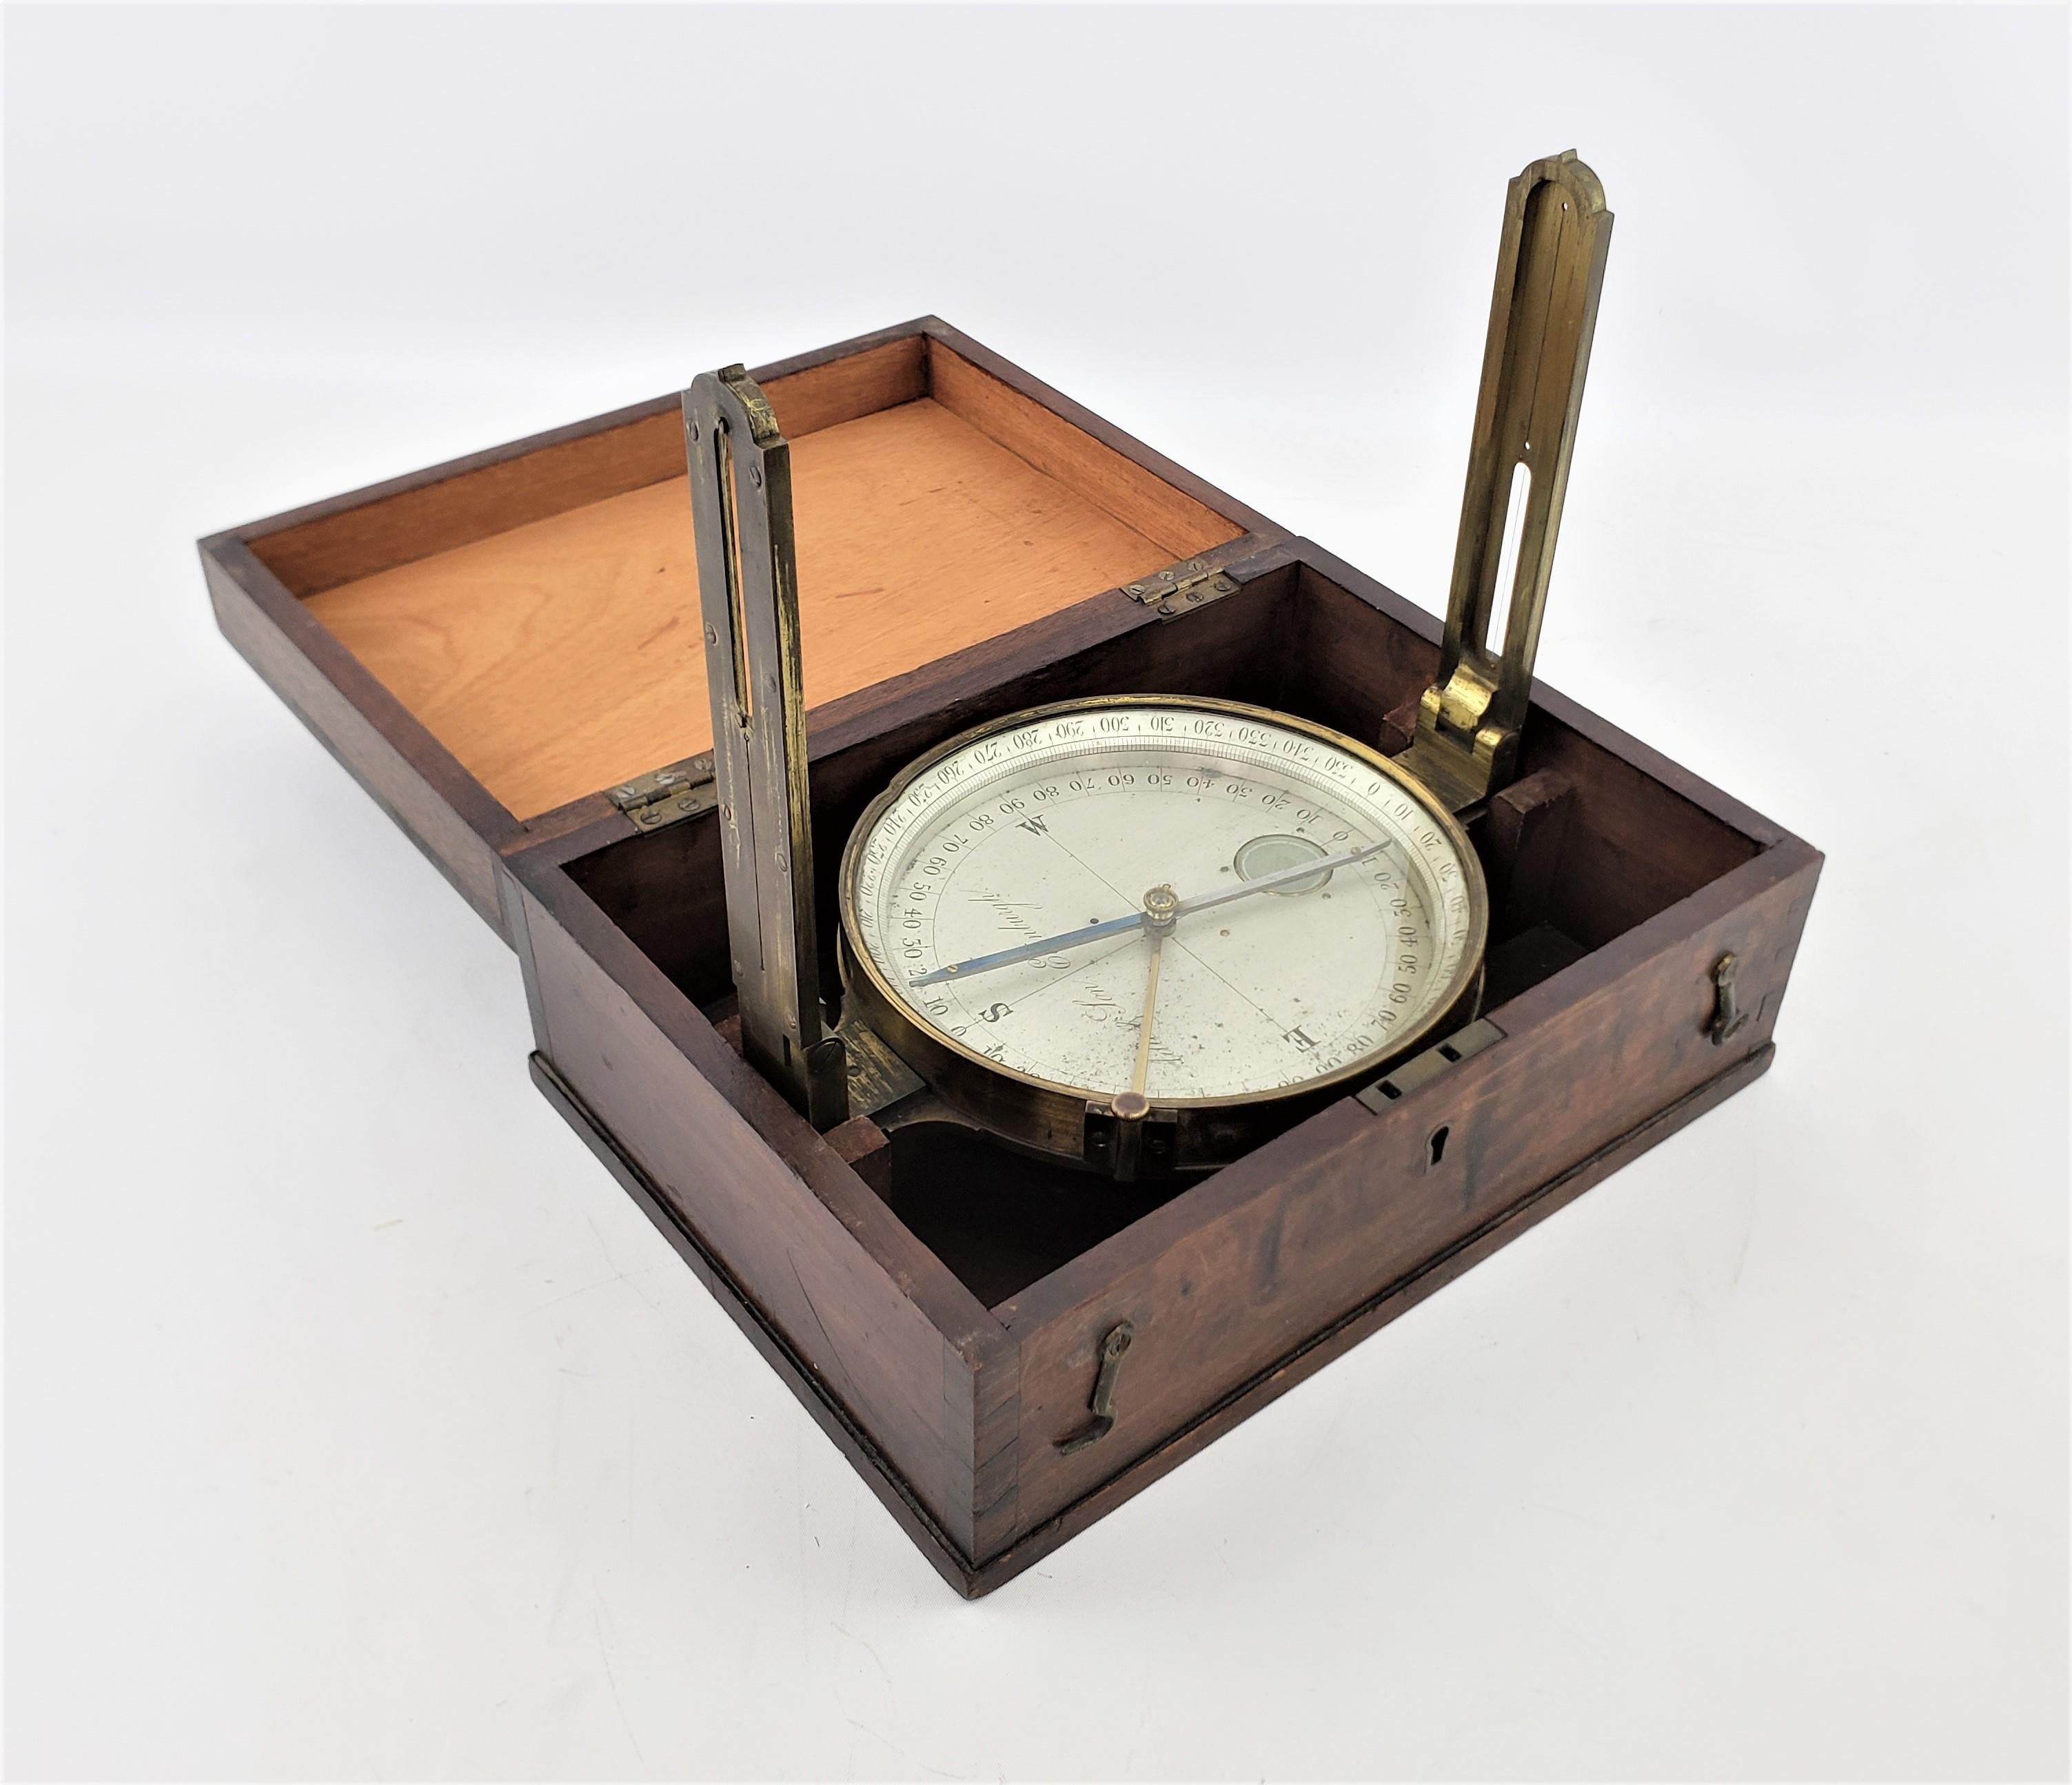 Dieser antike Vermessungskompass stammt aus Schottland und wurde um 1880 im viktorianischen Stil hergestellt. Das Gehäuse des Kompasses besteht aus massivem Messing mit einem Zifferblatt und Zeigern aus Metall. Der Kompass hat zwei klappbare Bügel,